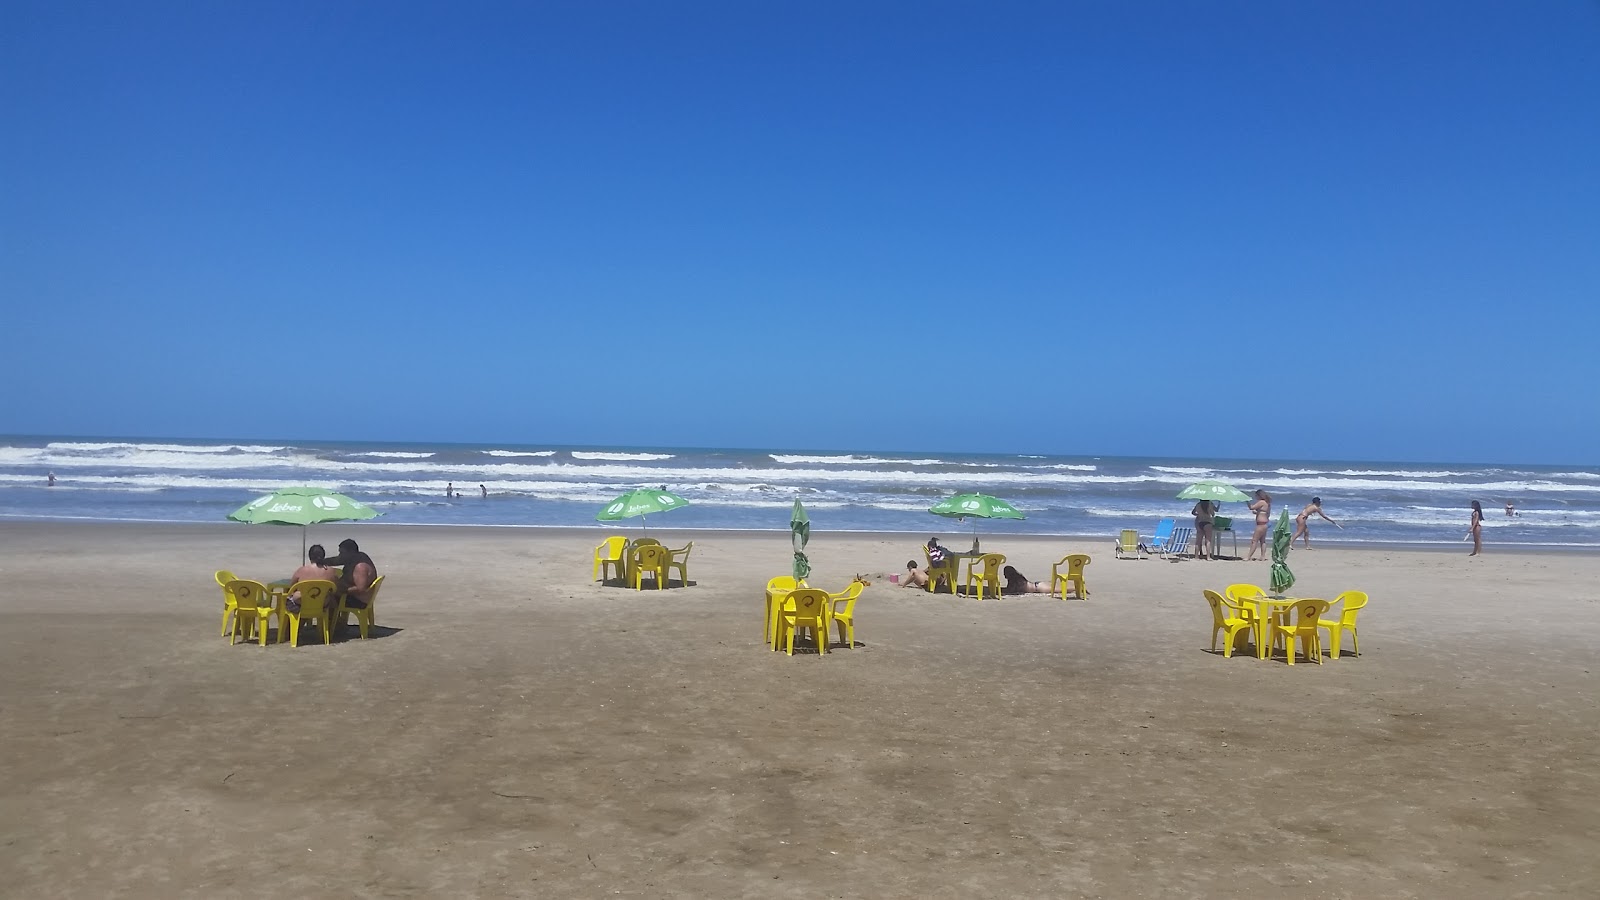 苏尔亚特兰蒂达海滩的照片 - 受到放松专家欢迎的热门地点